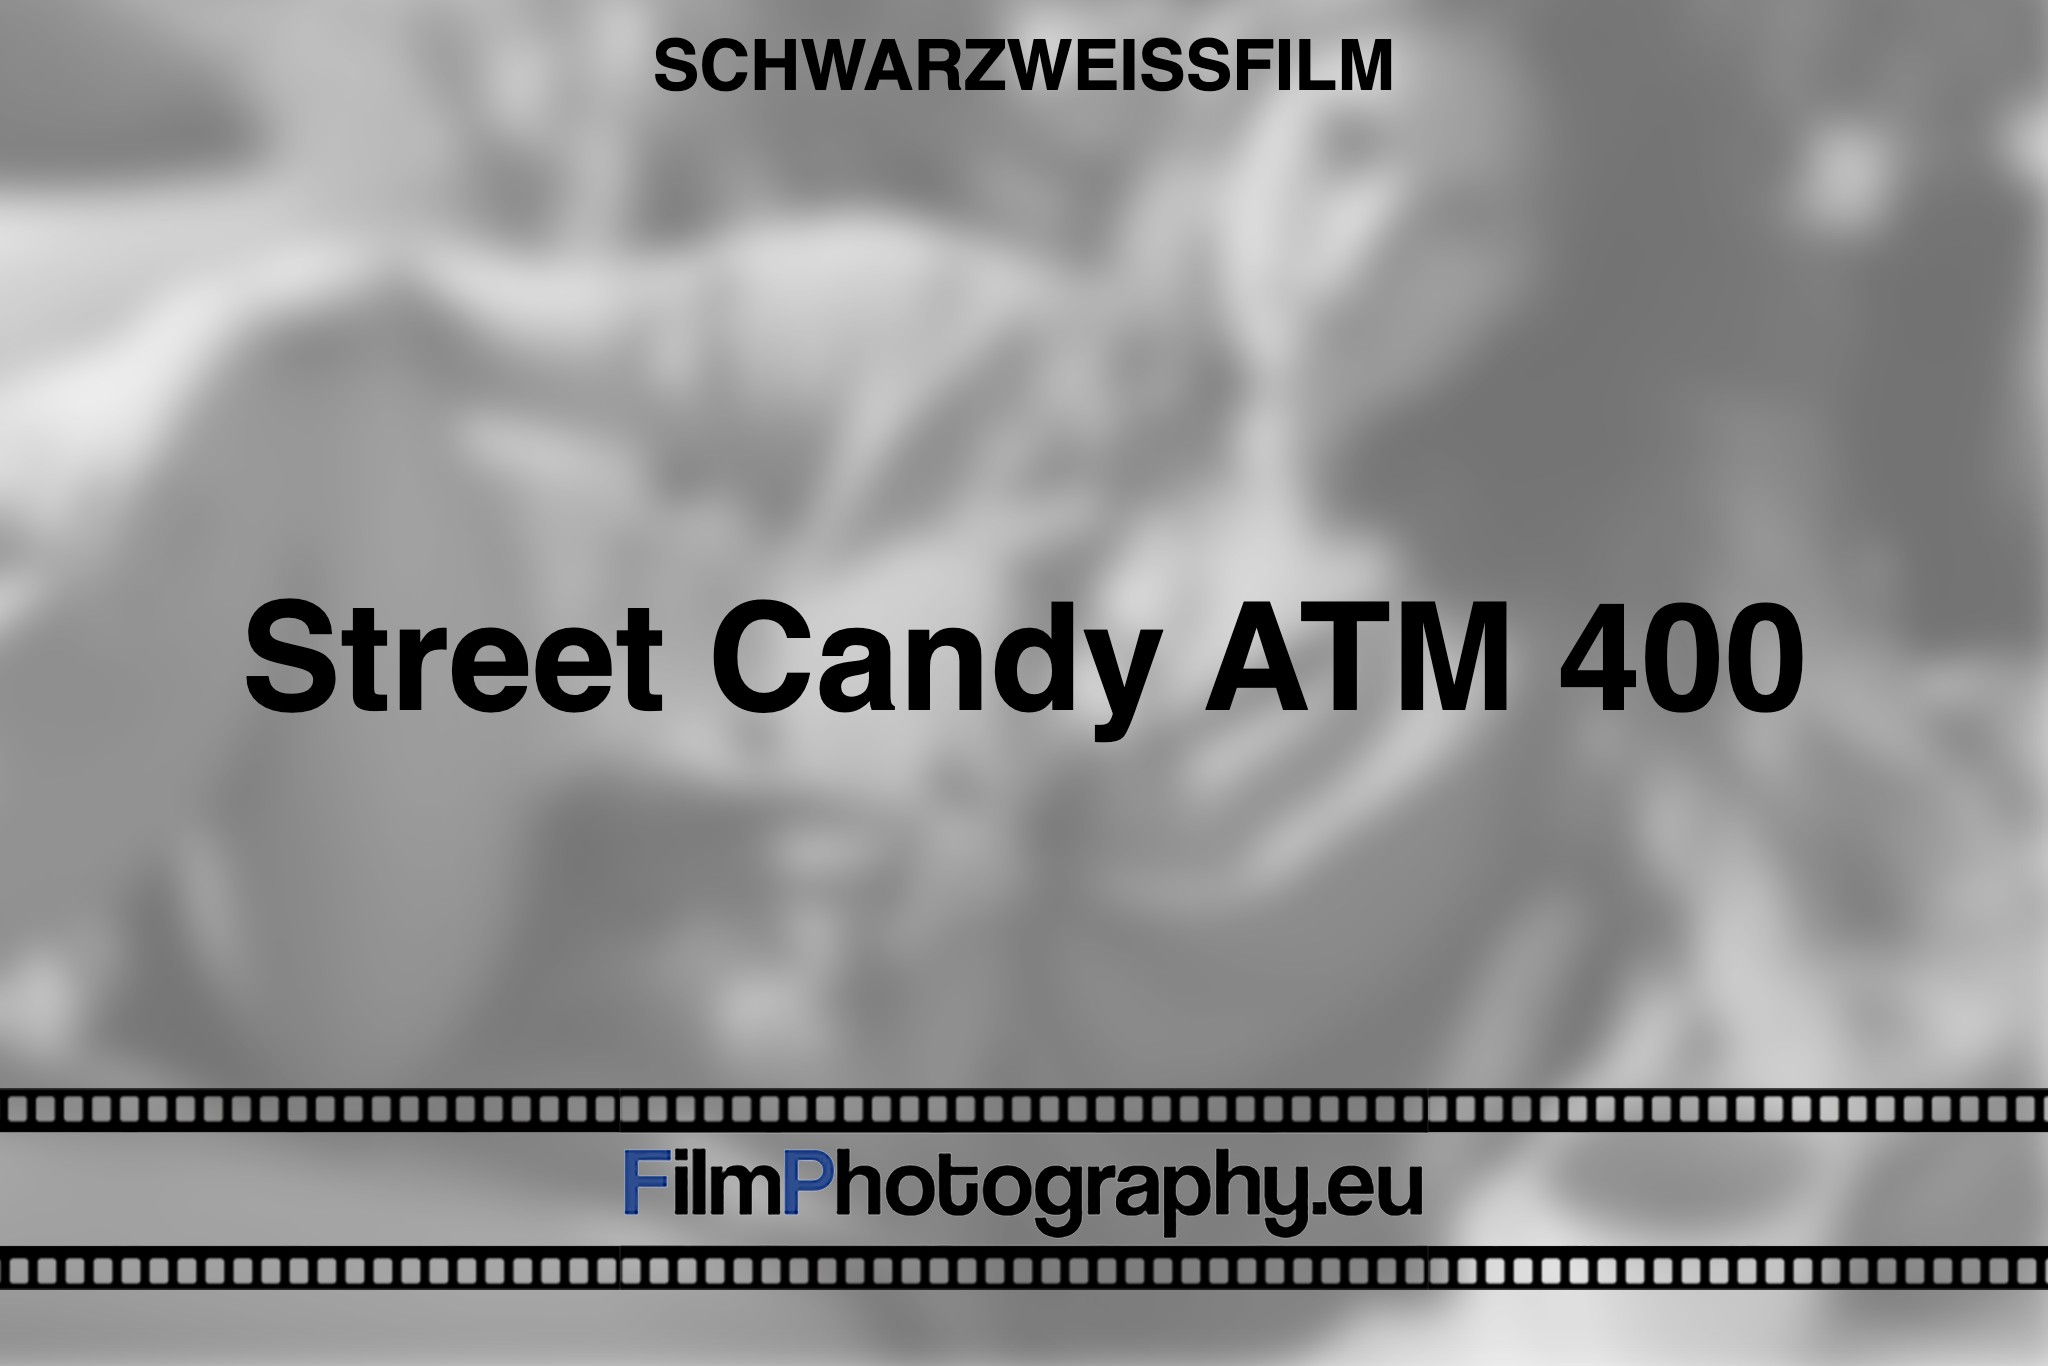 street-candy-atm-400-schwarzweißfilm-bnv